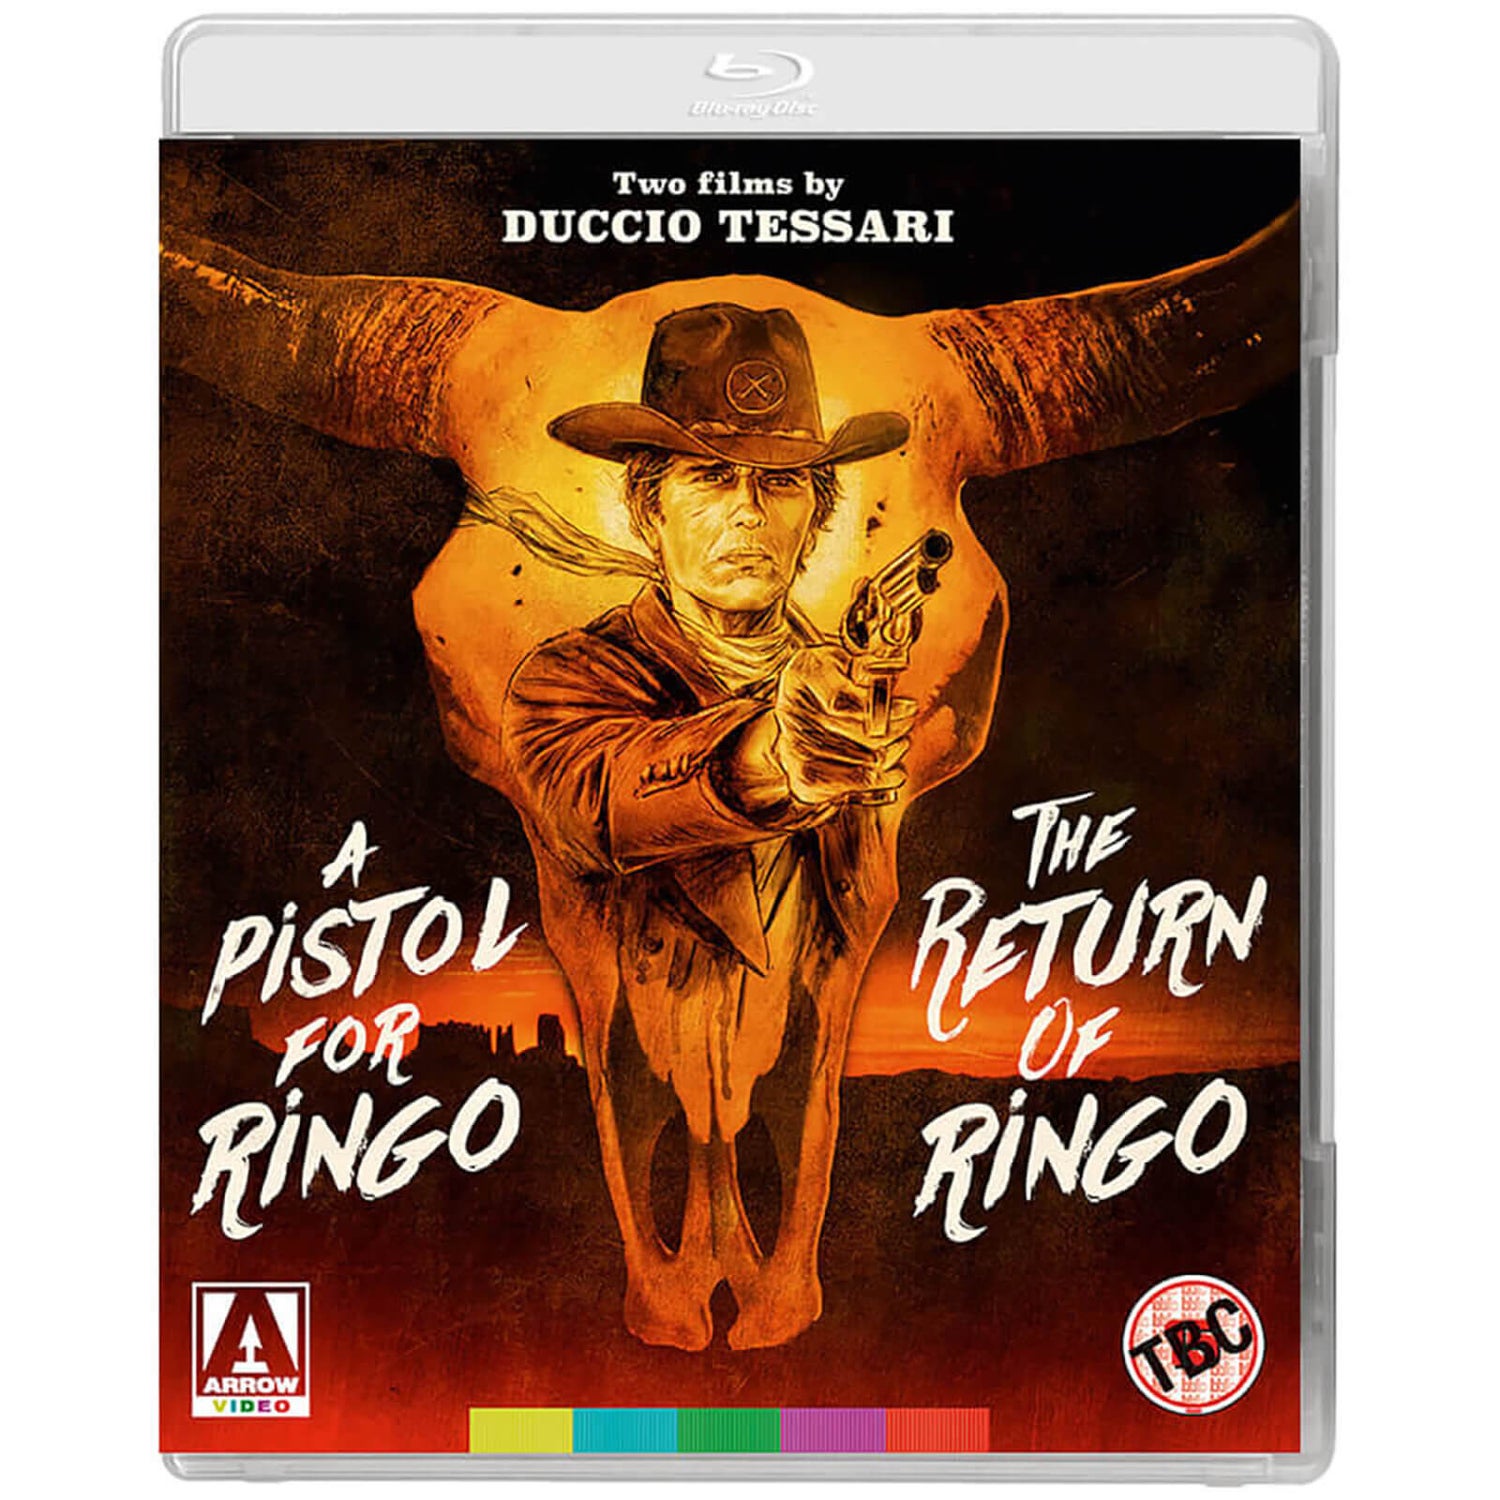 Un pistolet pour Ringo et Le retour de Ringo - Deux films de Duccio Tessari